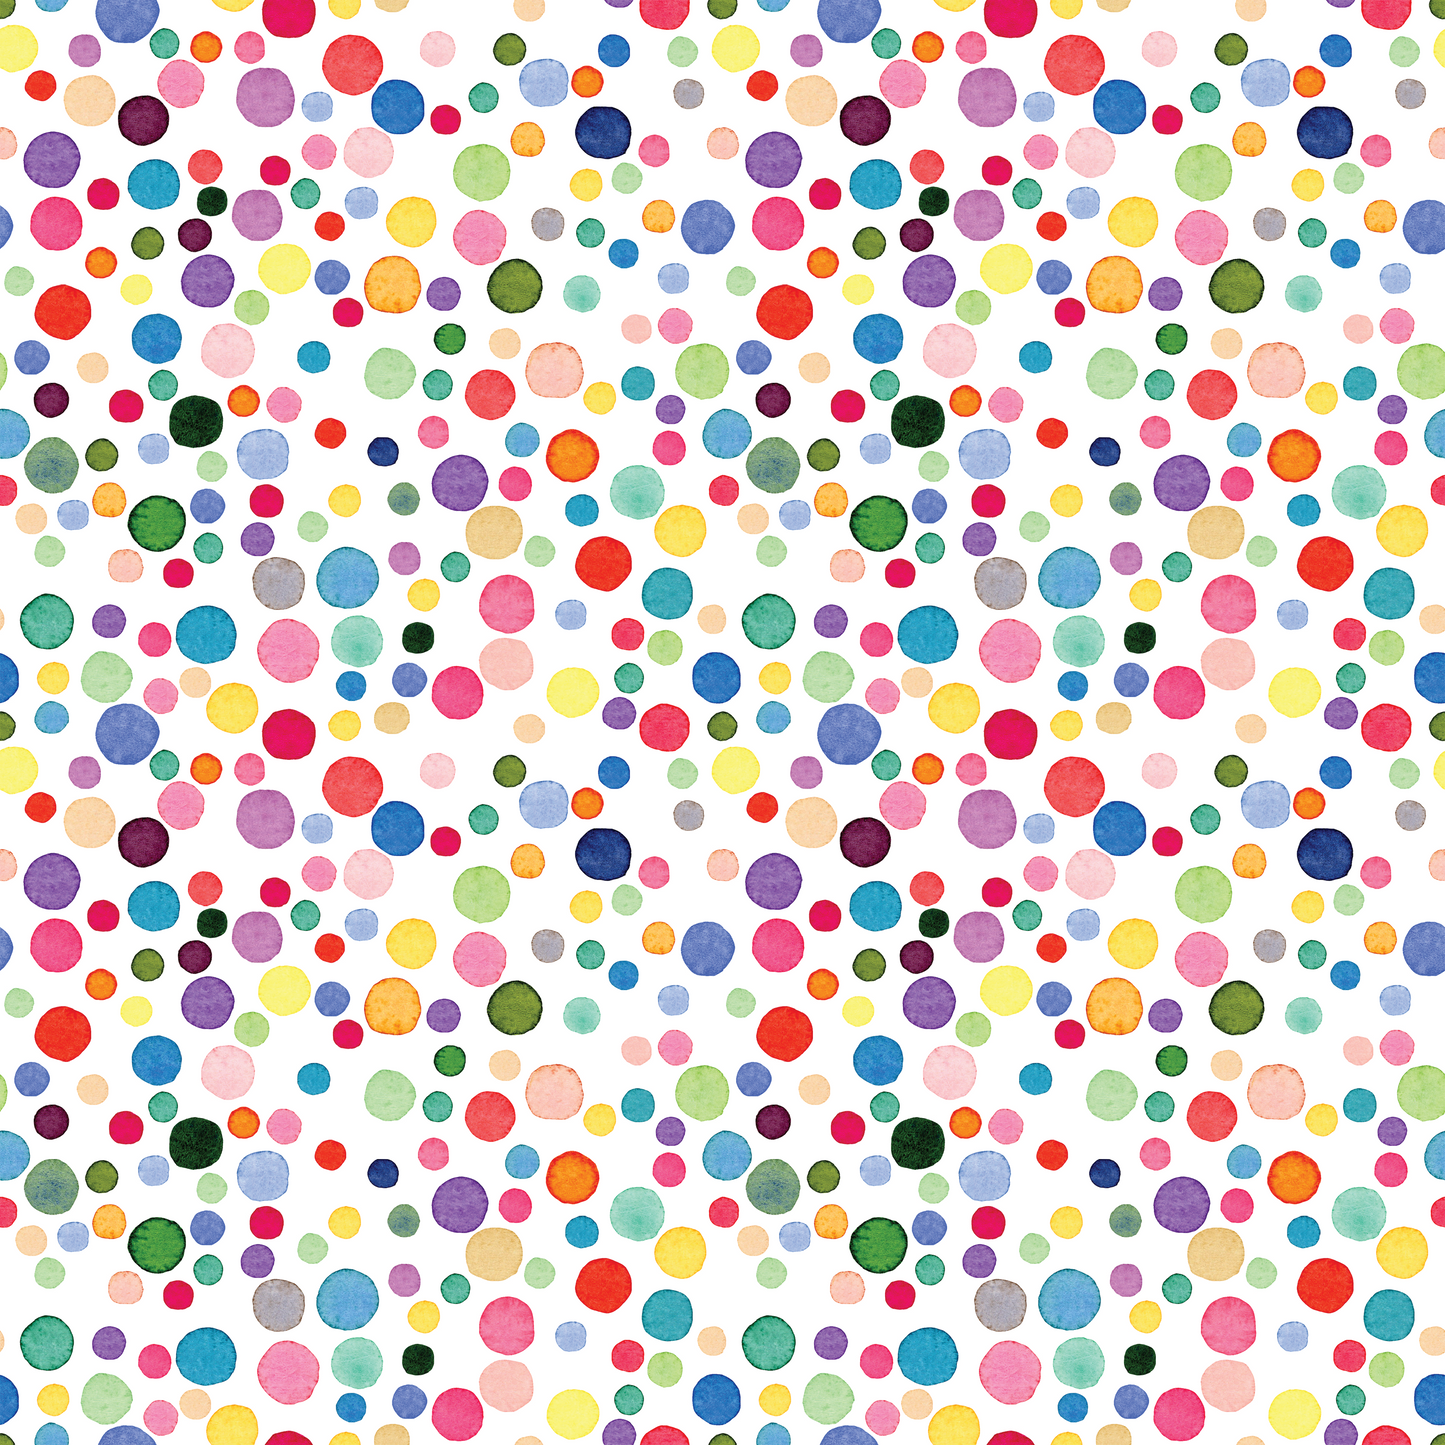 Confetti - Dots 001